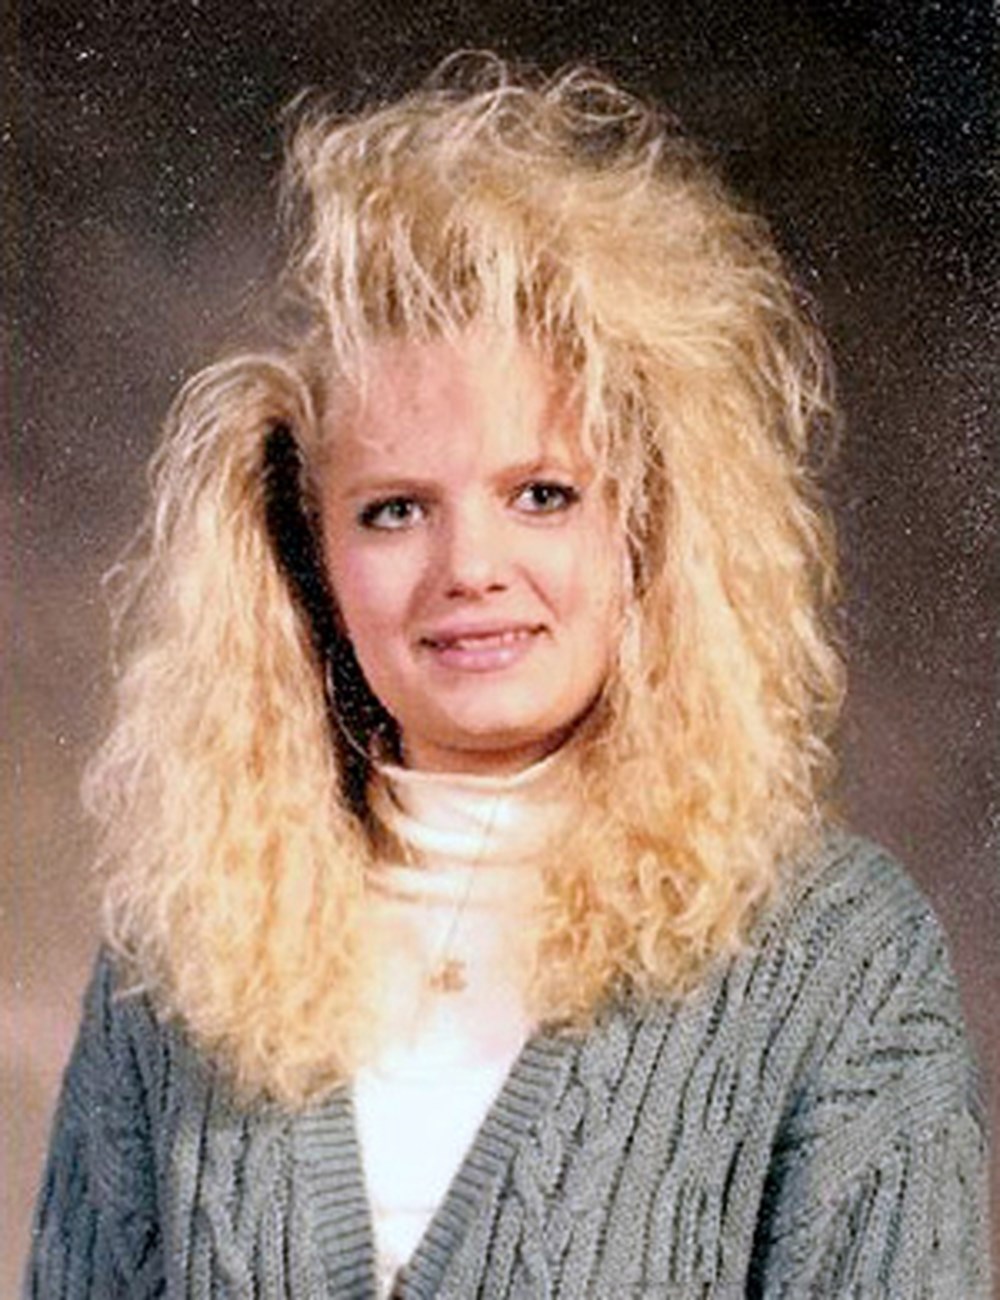 Причёски 90-х годов женские